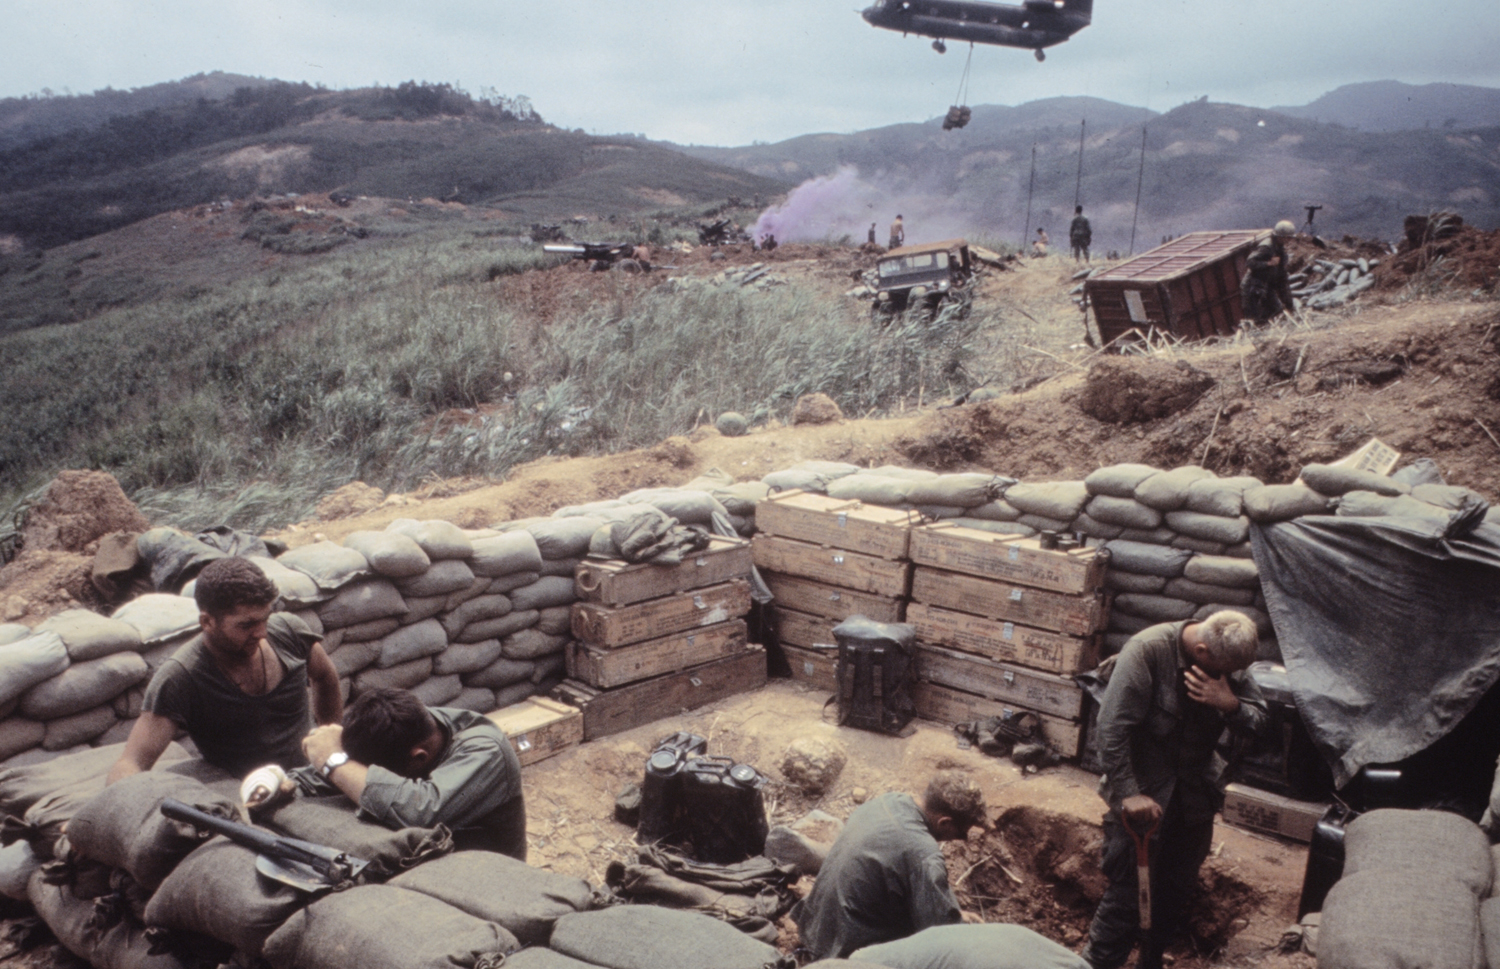 Scene in Vietnam during Operation Pegasus, 1968.